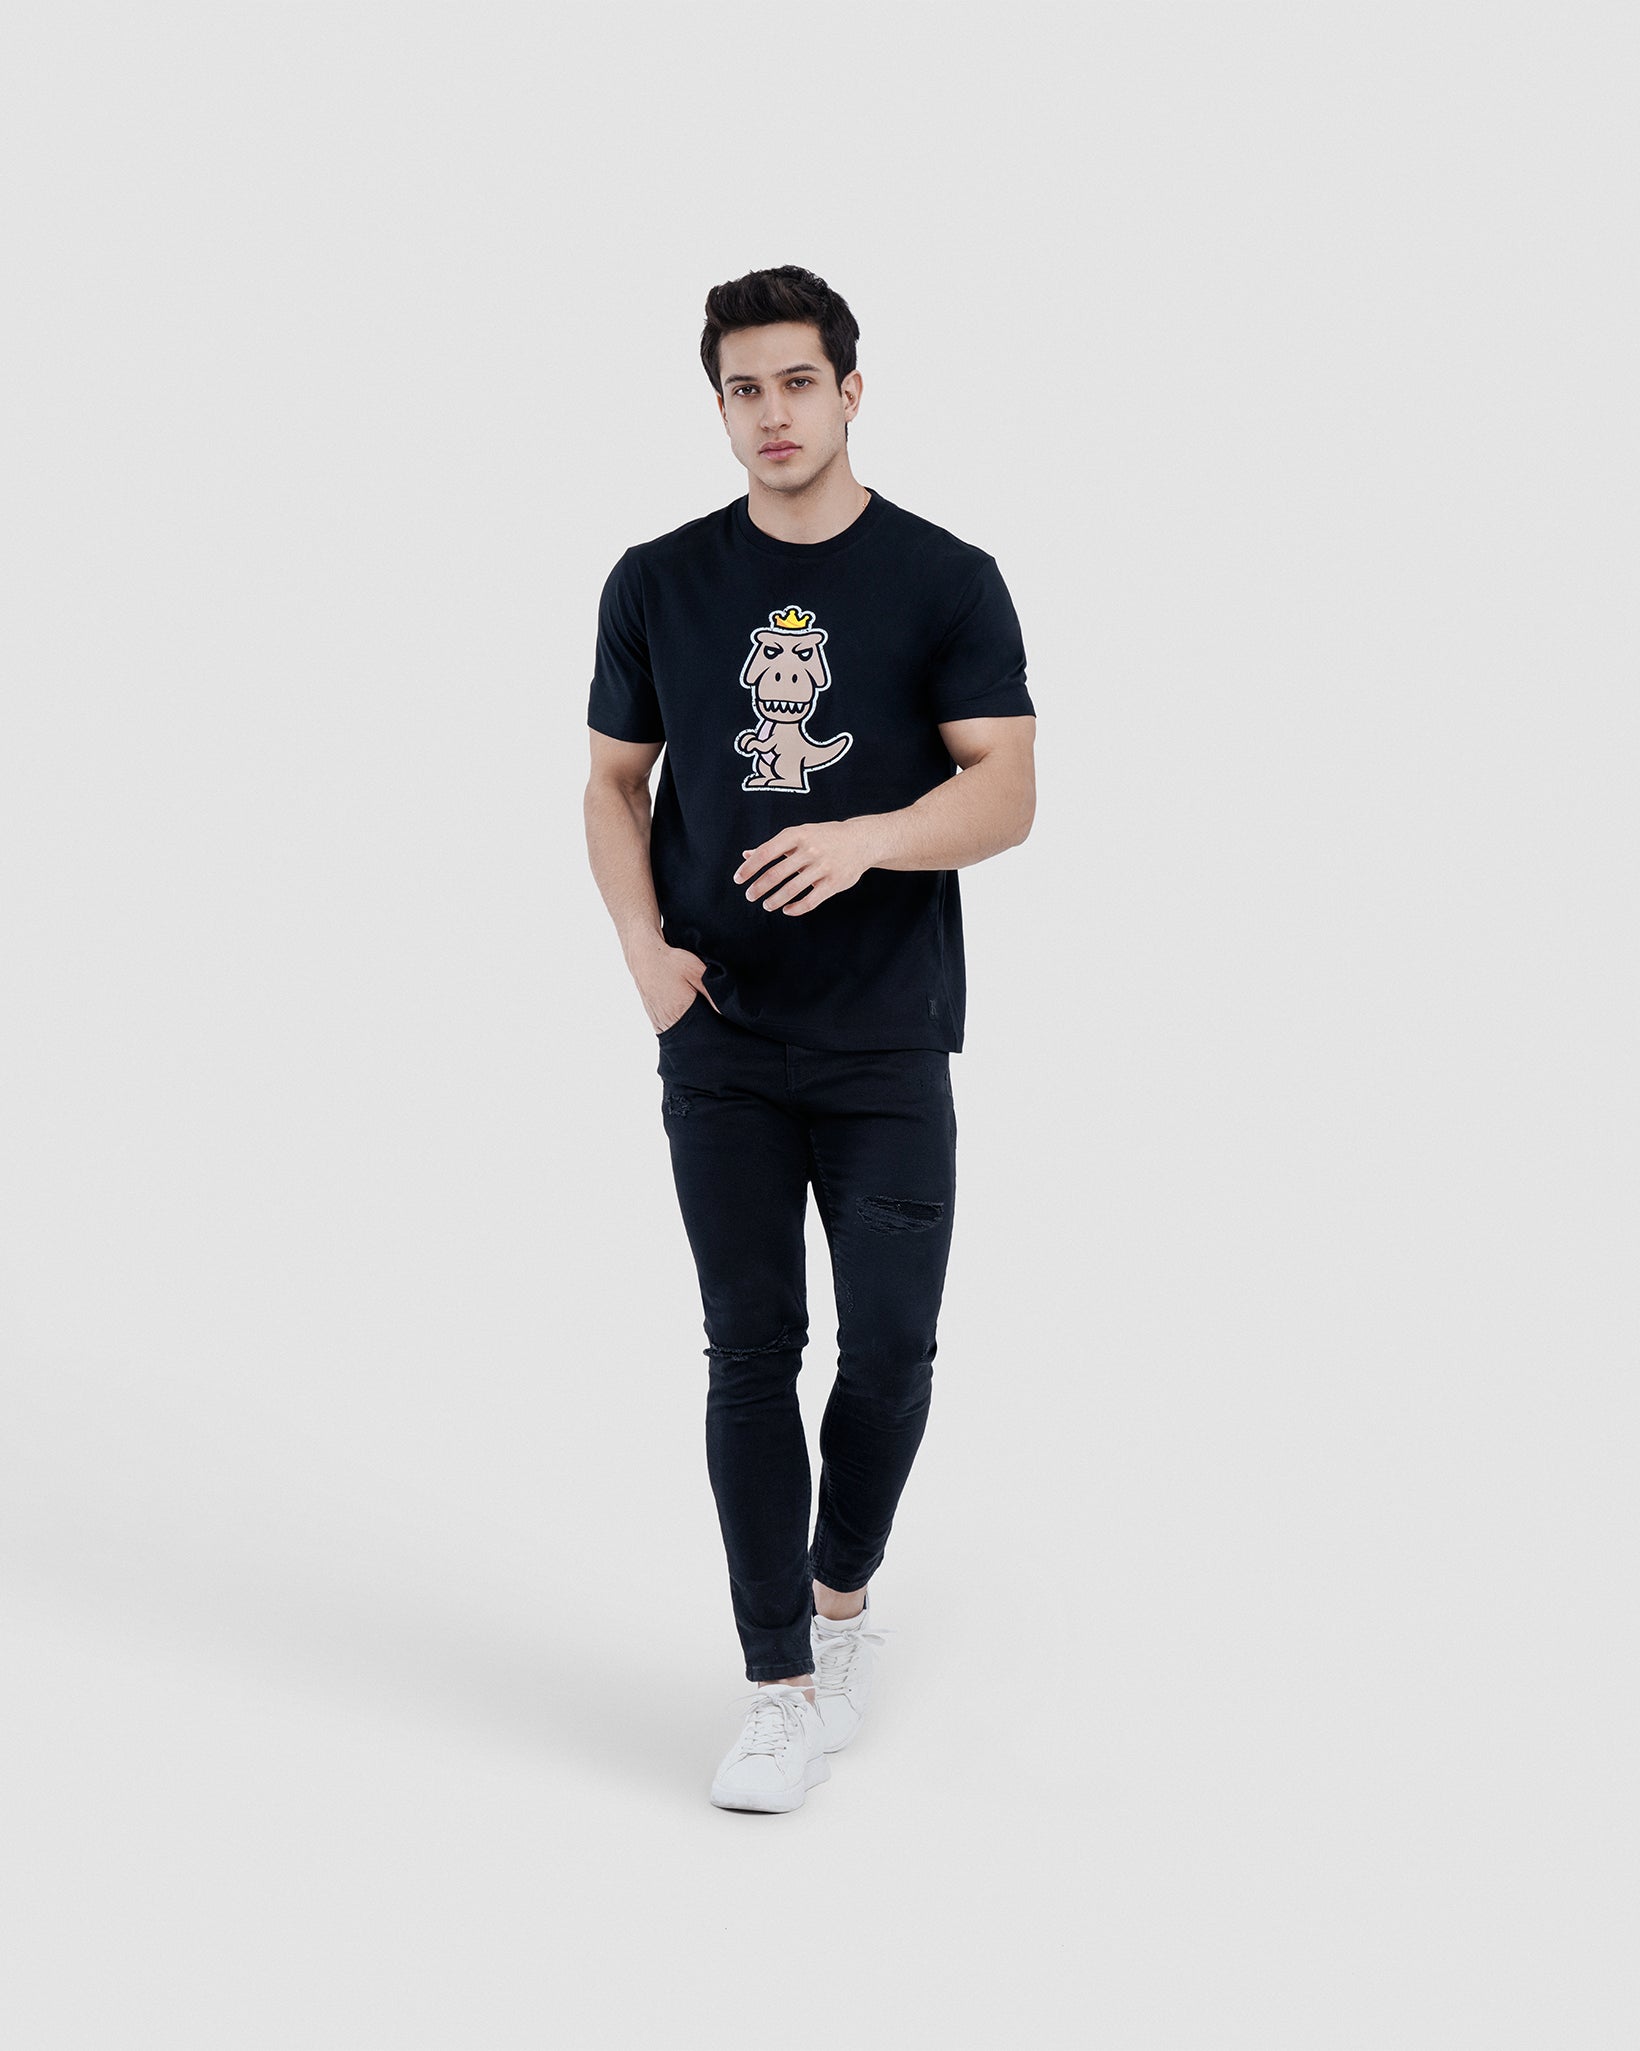 T-Rex Nudus Pima Cotton T-shirt